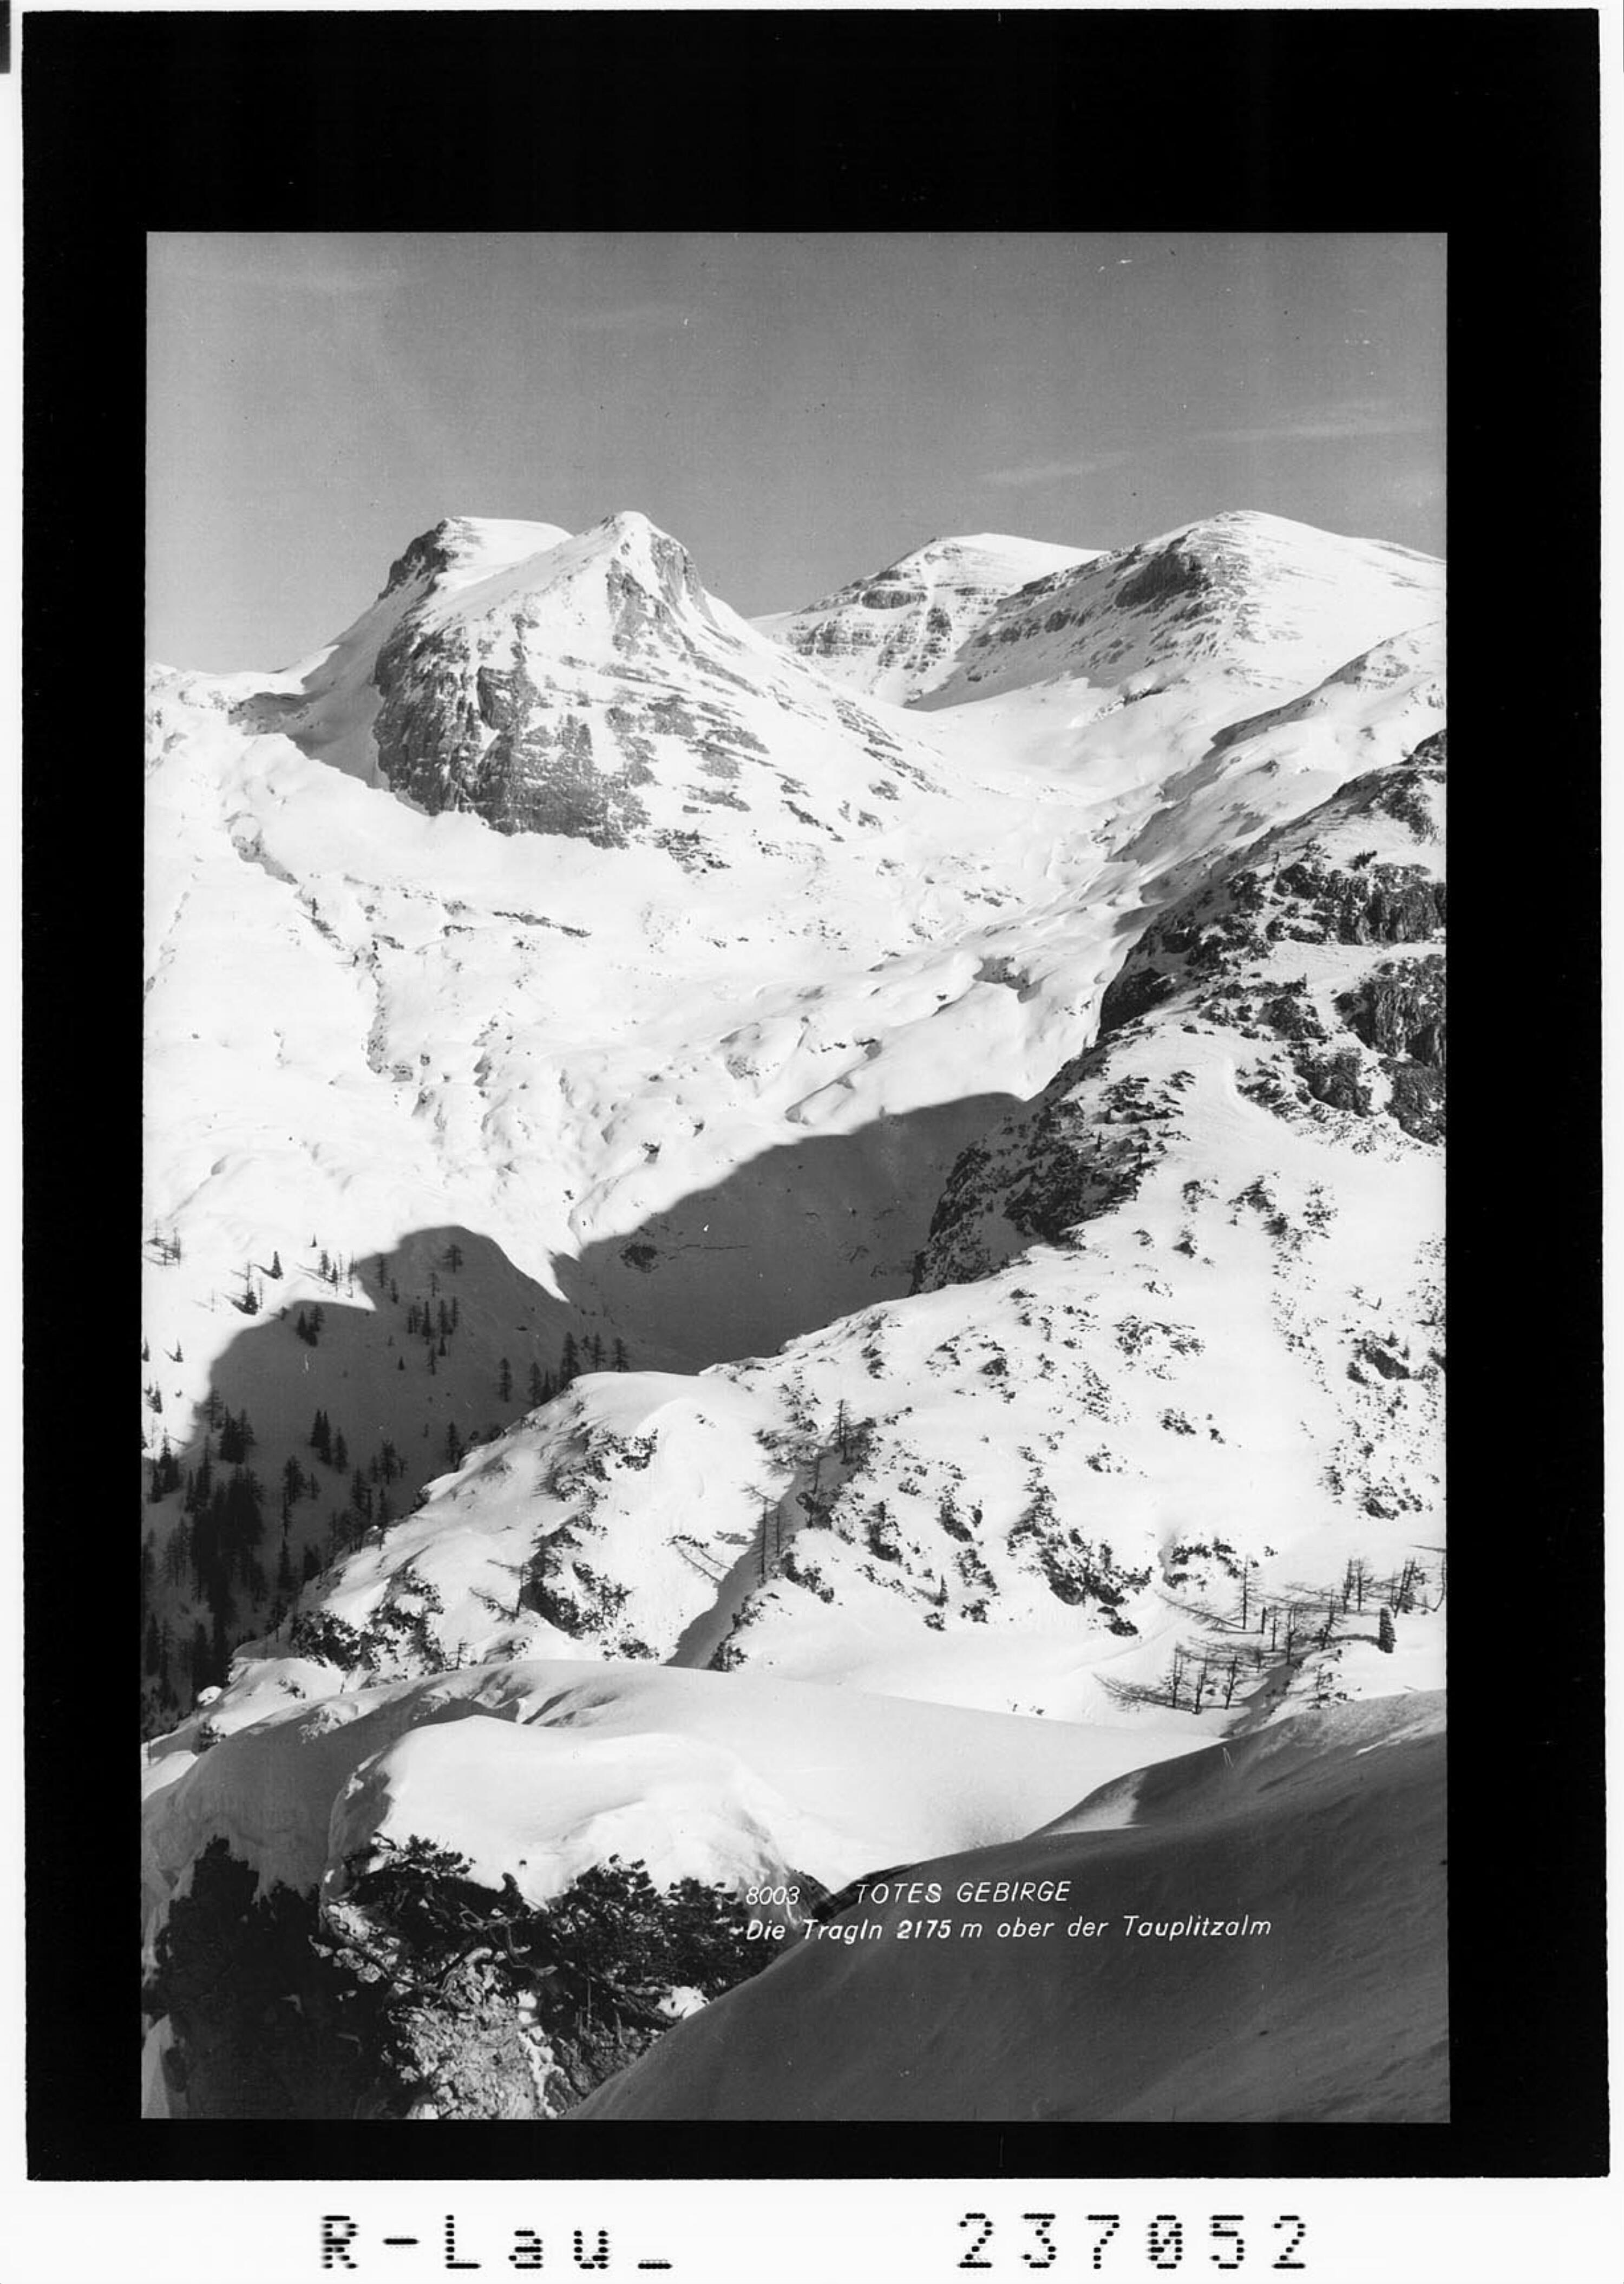 Totes Gebirge / Die Tragln 2175 m ober der Tauplitzalm></div>


    <hr>
    <div class=